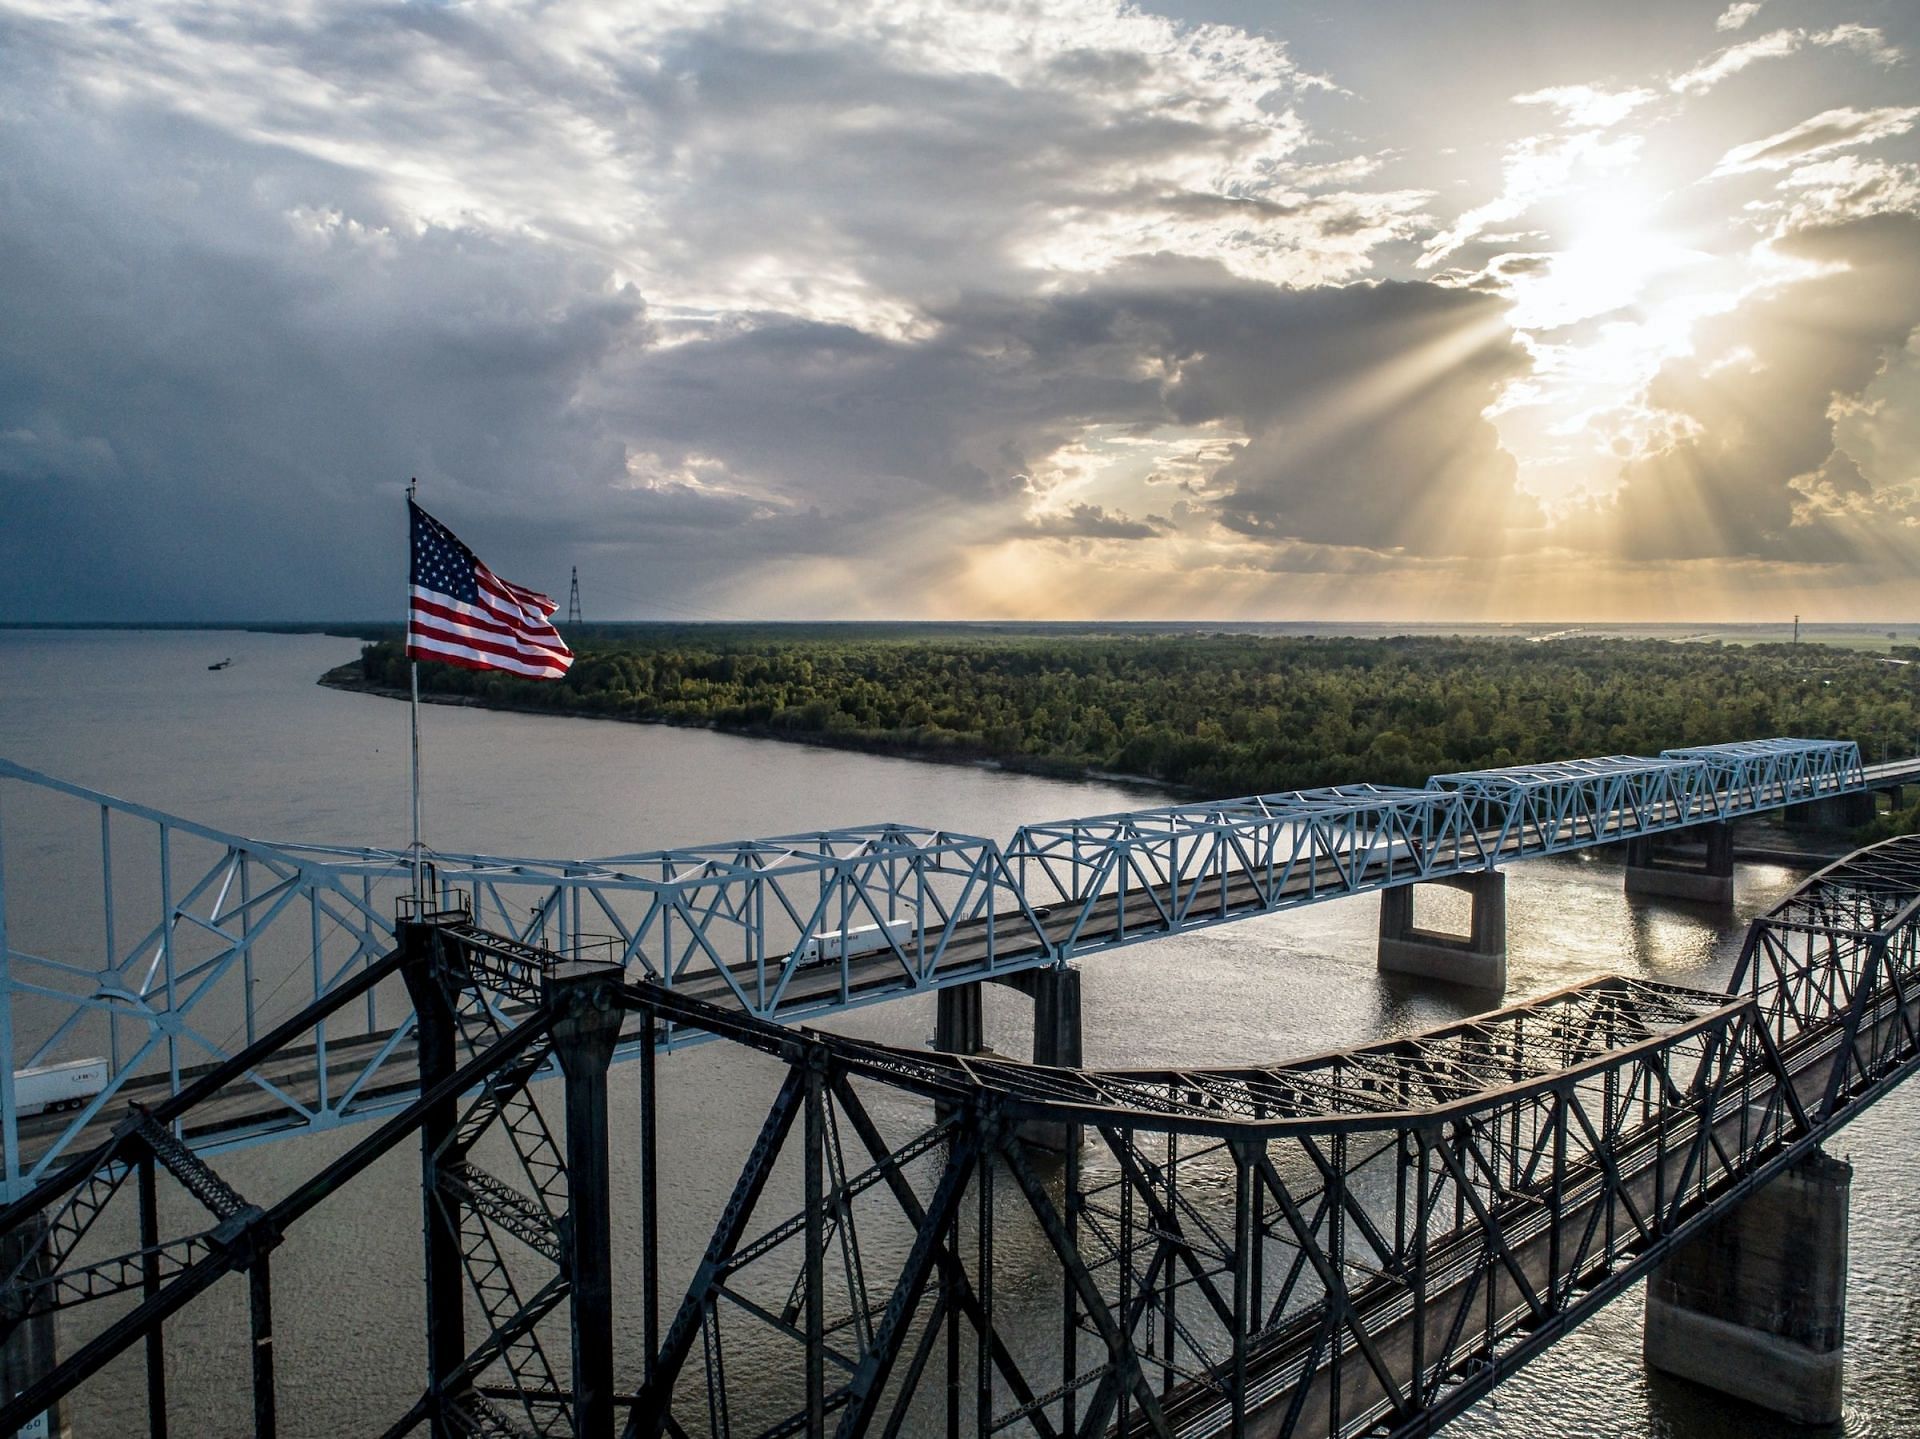 Mississippi (Image via Unsplash/Justin Wilkens)